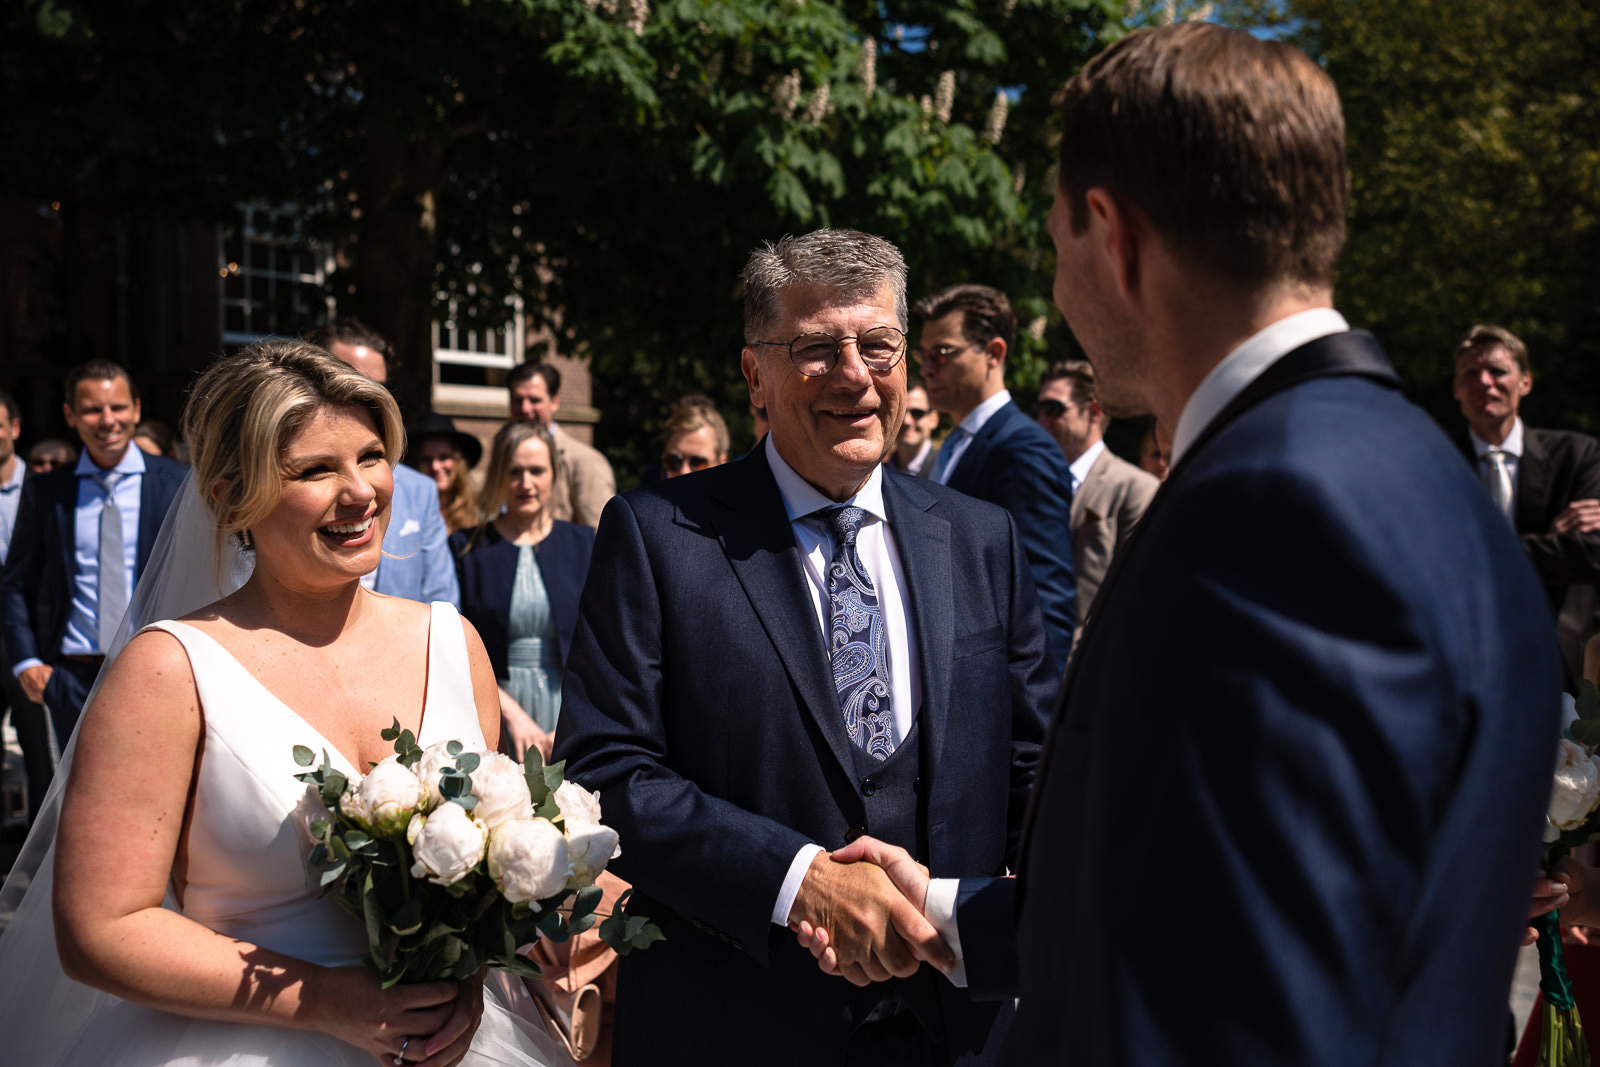 vader geeft bruid weg aan de bruidegom tijdens trouwceremonie Trouwfotograaf Den Haag